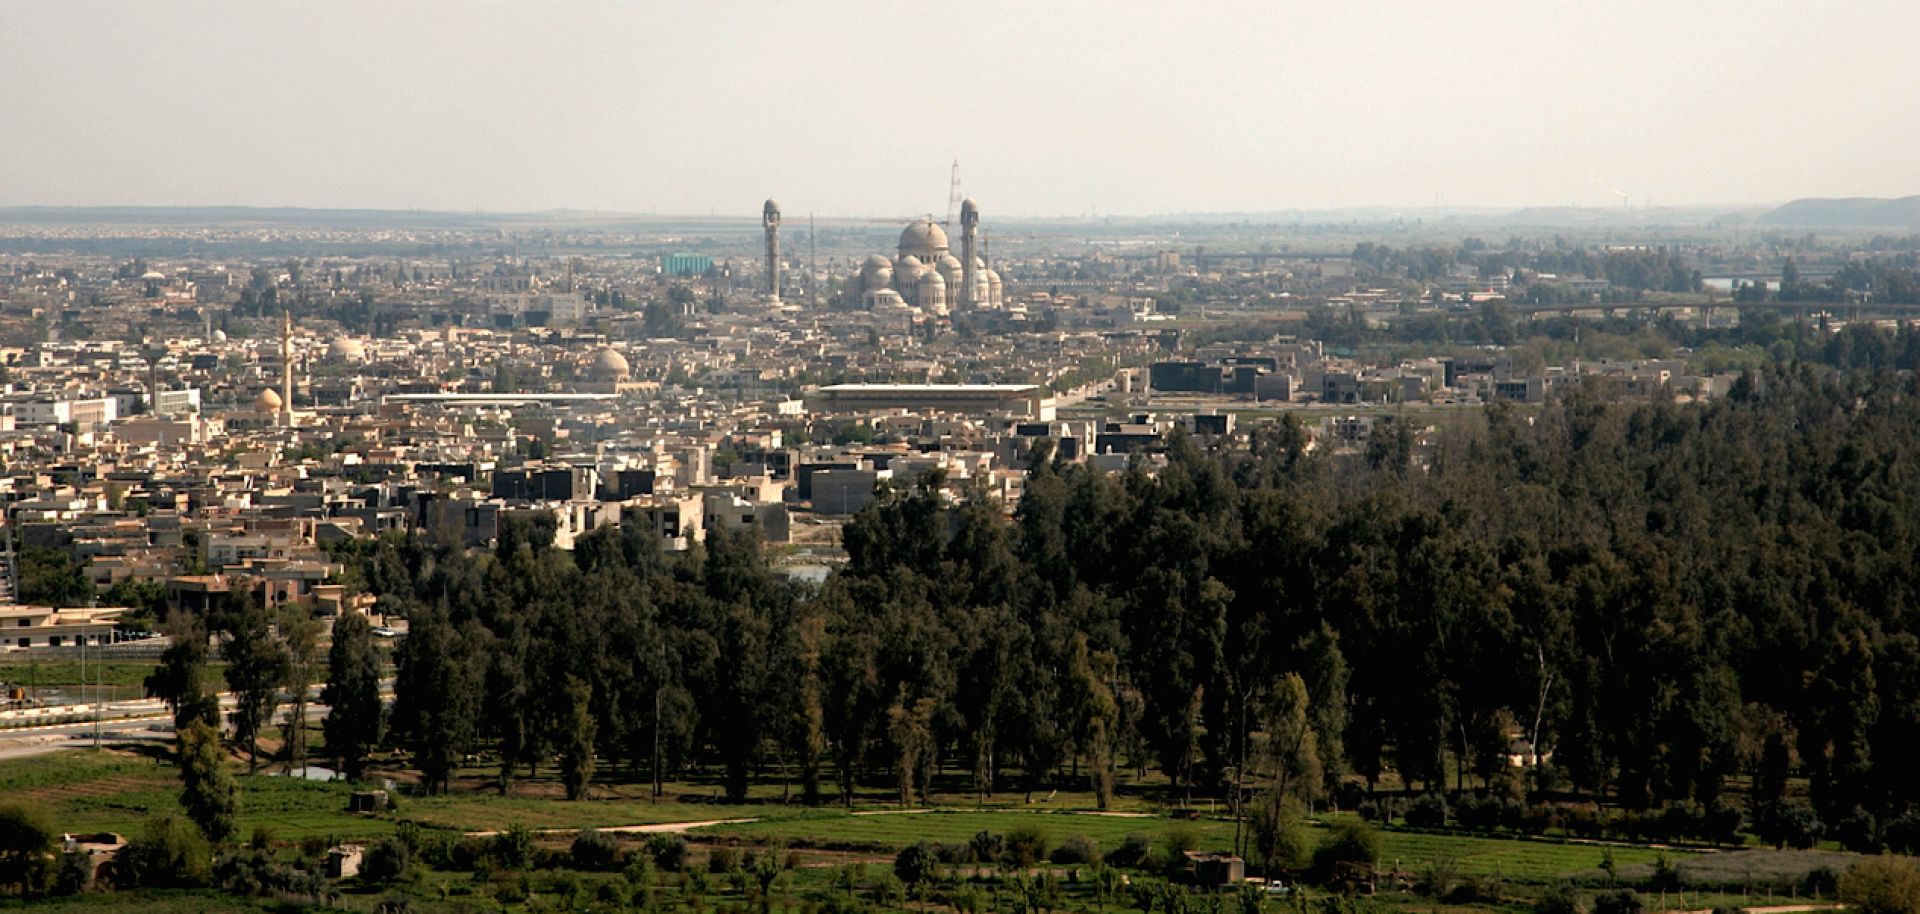 Mosul skyline